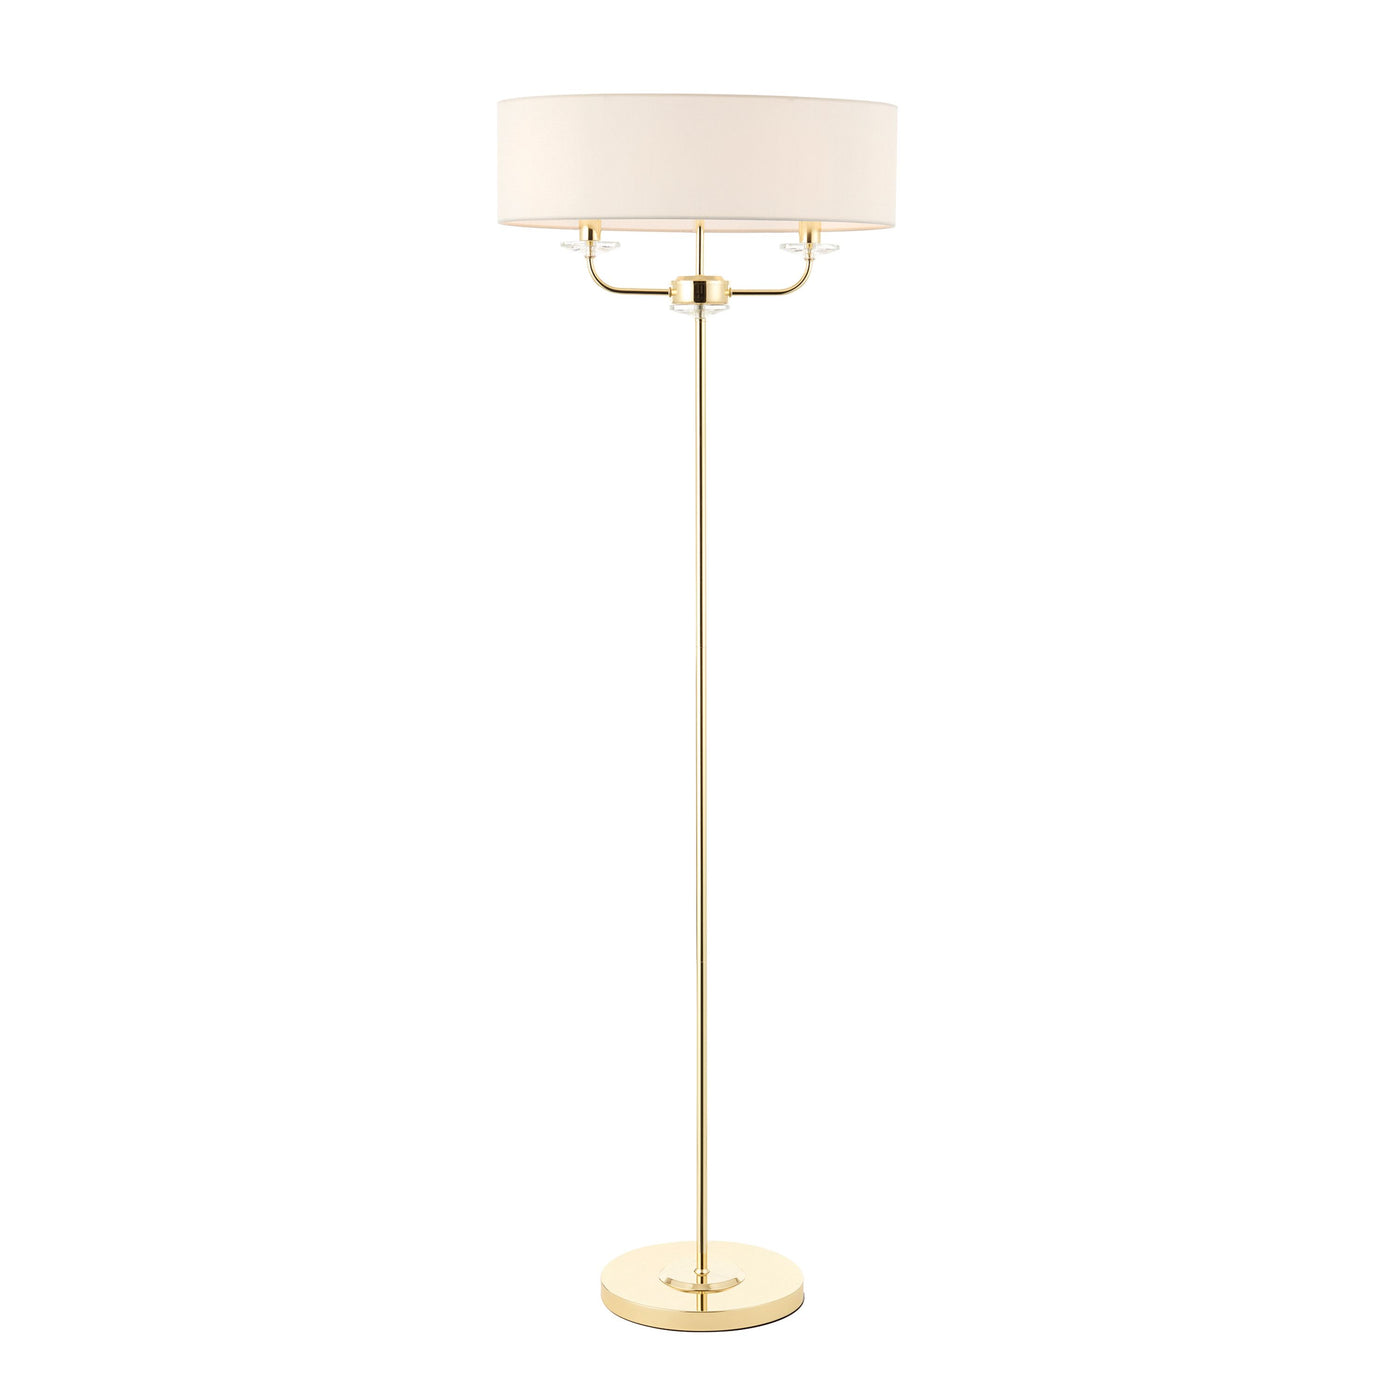 Eaclevedon Floor Lamp Brass